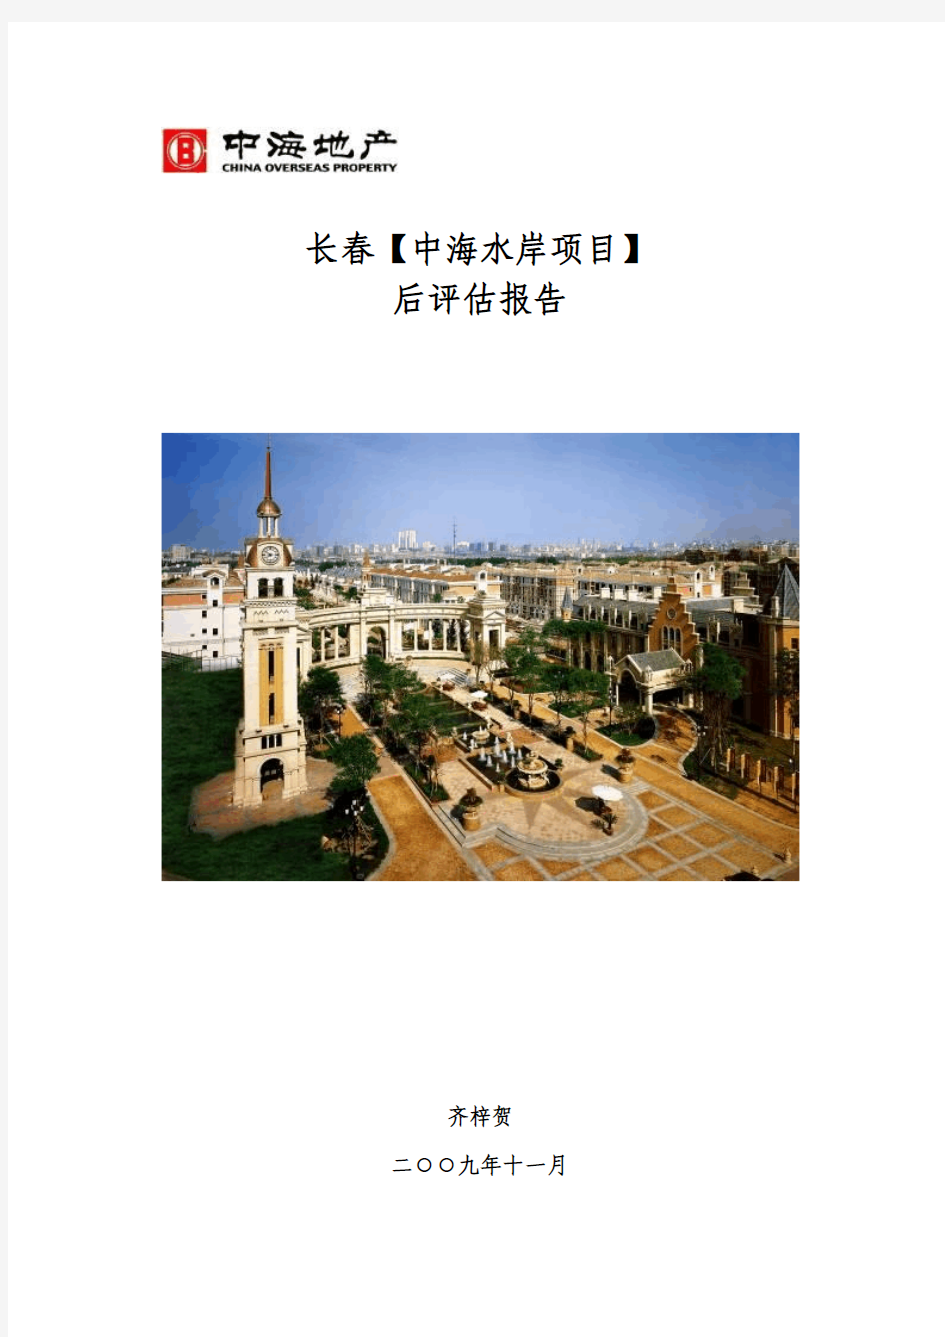 中海地产集团公司对完工项目之评估报告 (1)